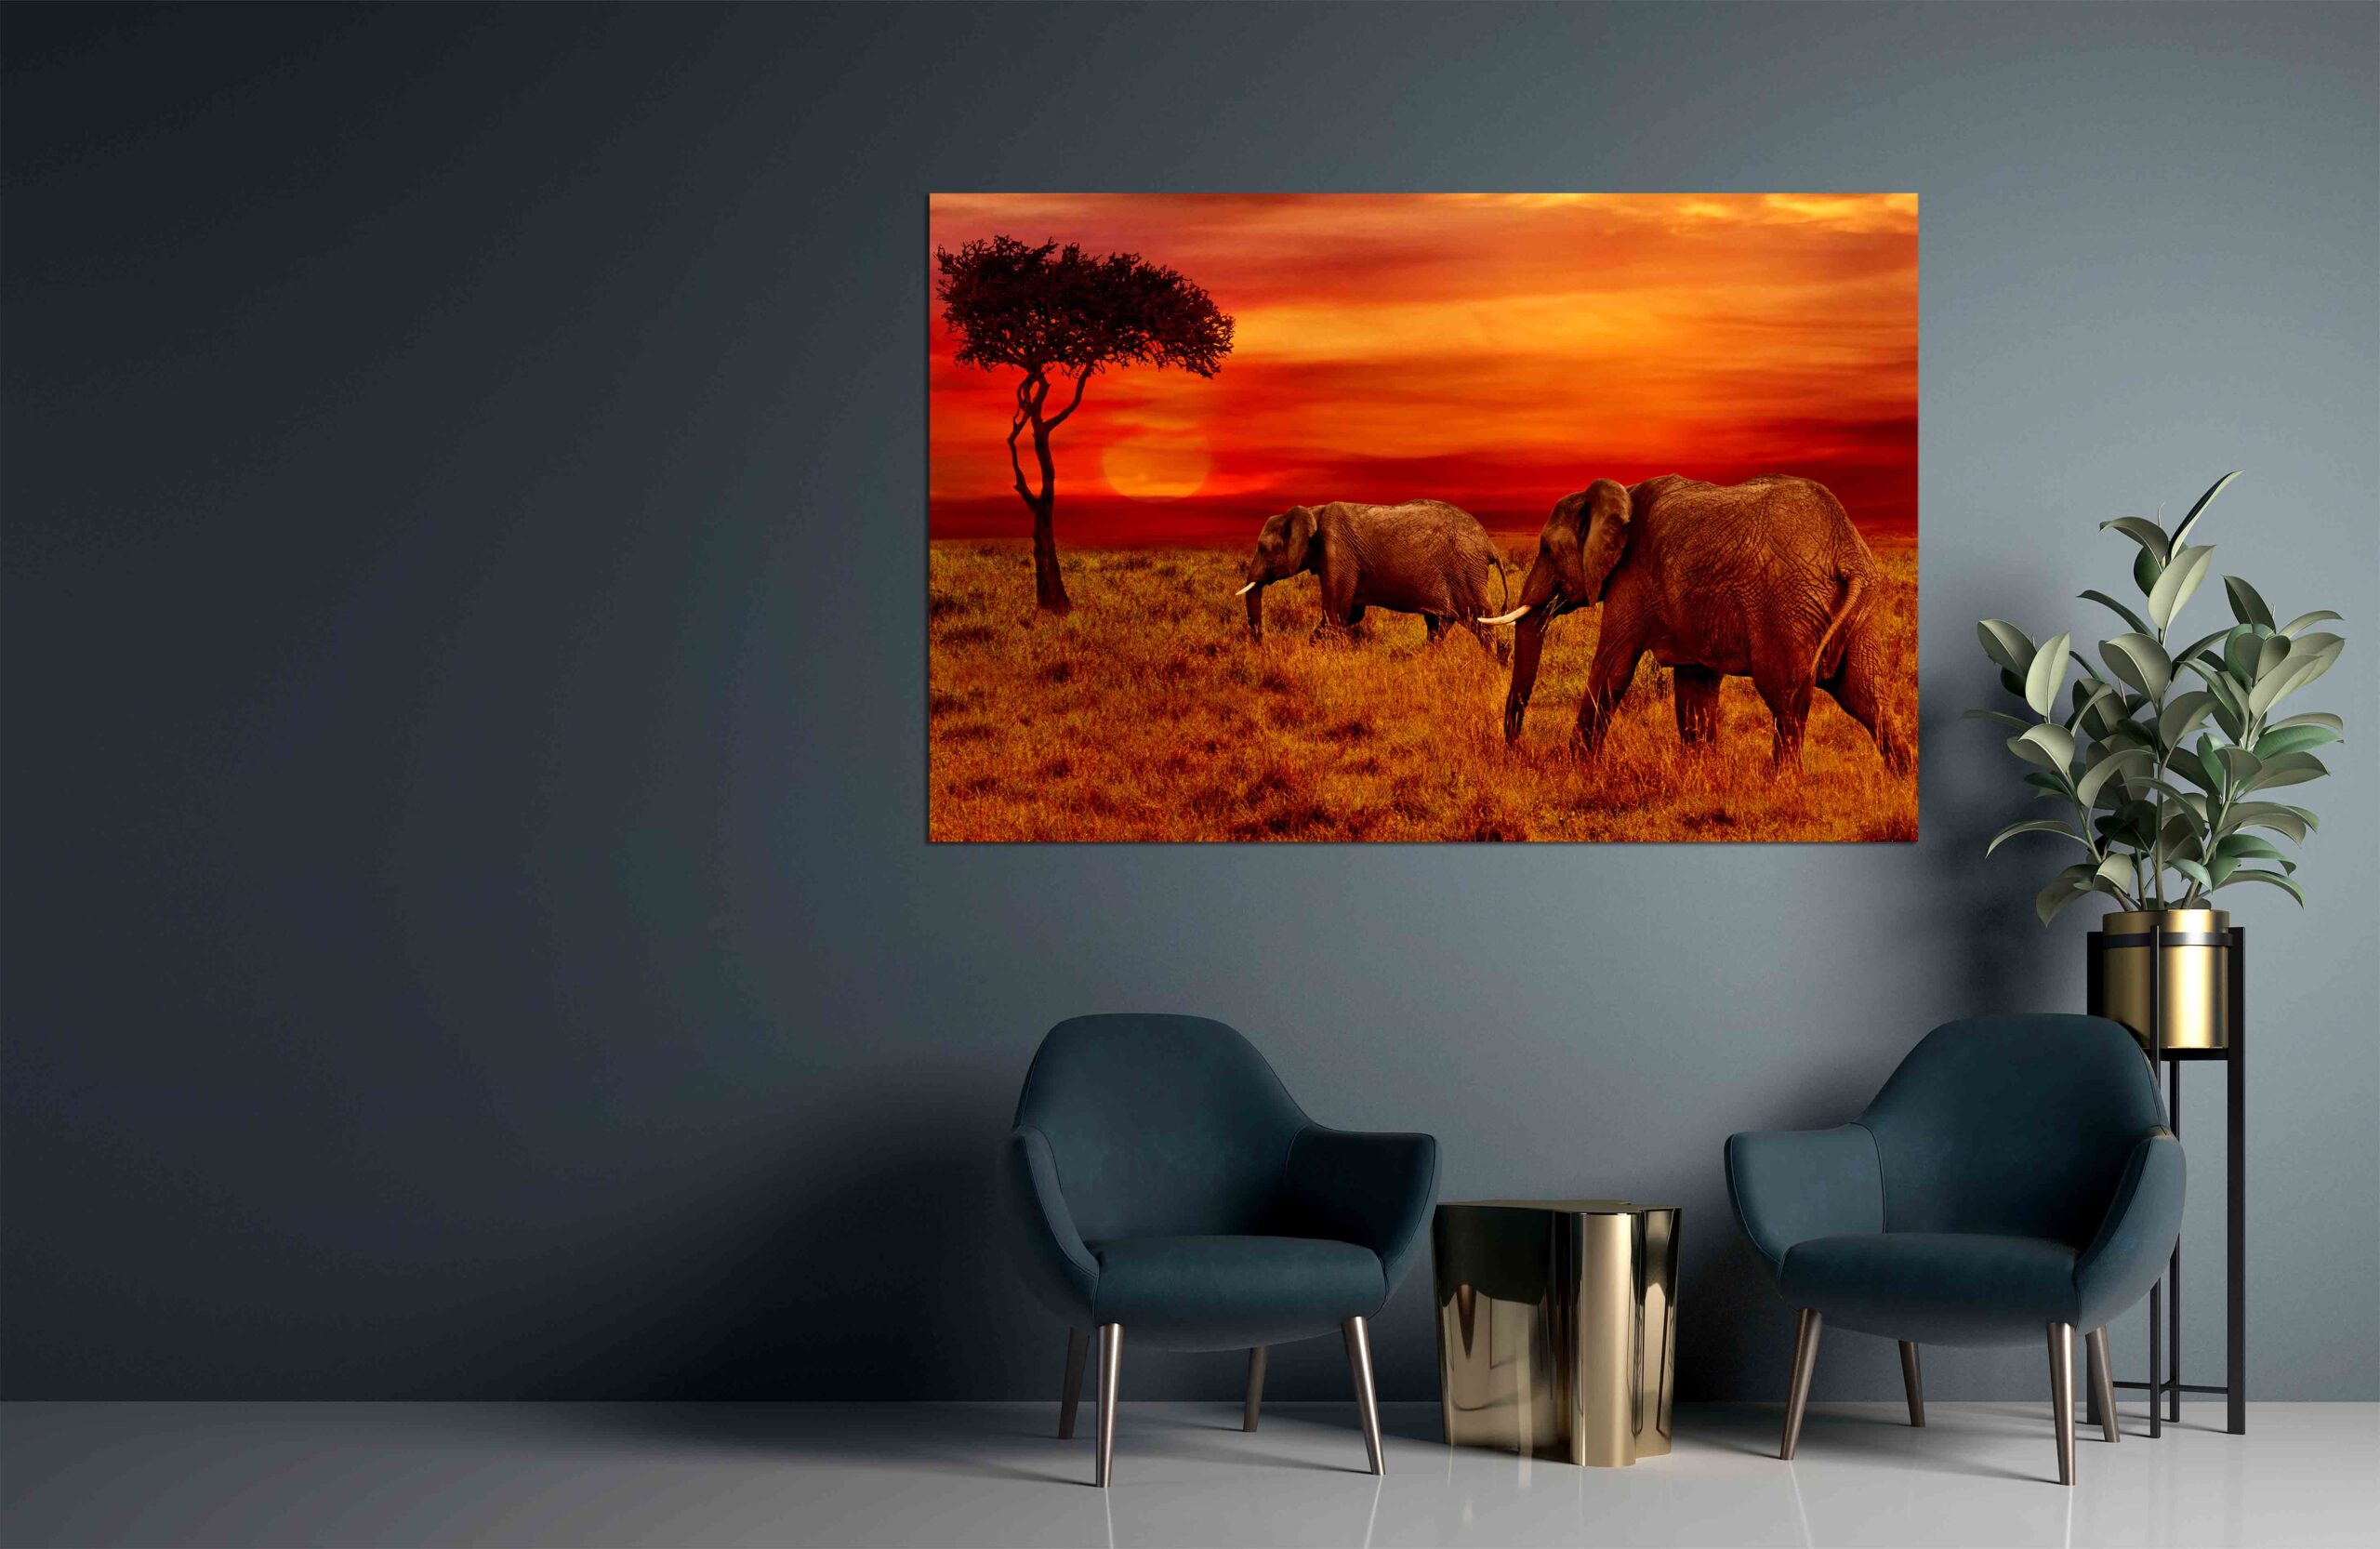 Elephants at Sunset Background